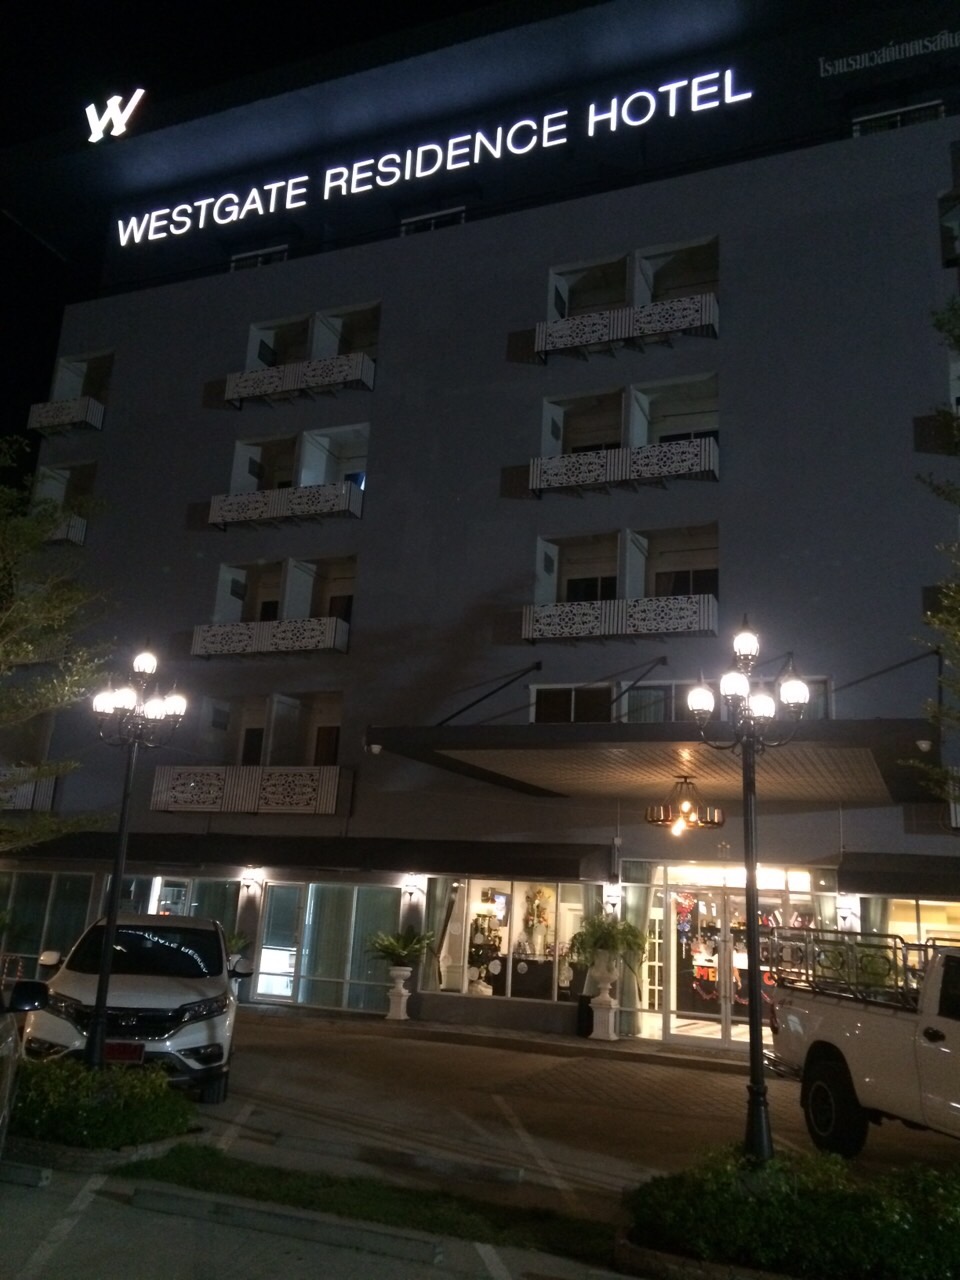 [photo of hotel facade]